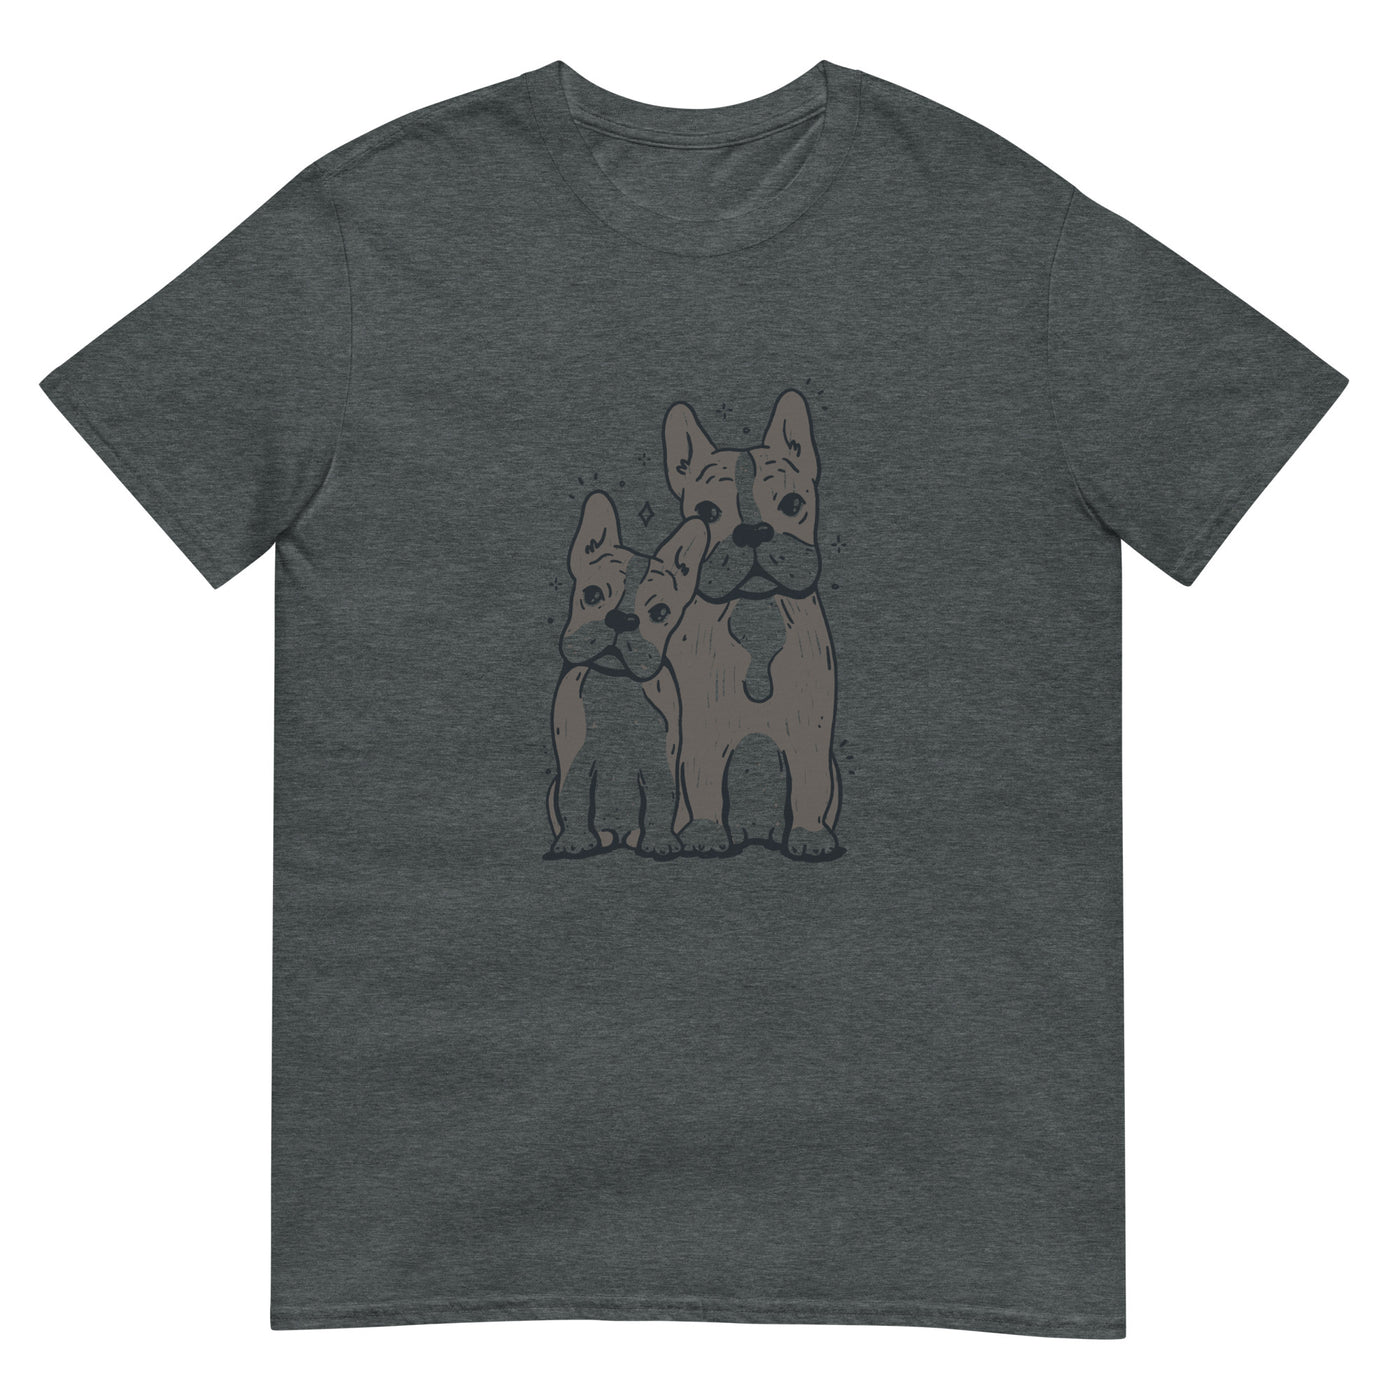 Französische Bulldoggen in Duo-Ton-Illustration - Herren T-Shirt Other_Niches xxx yyy zzz Dark Heather